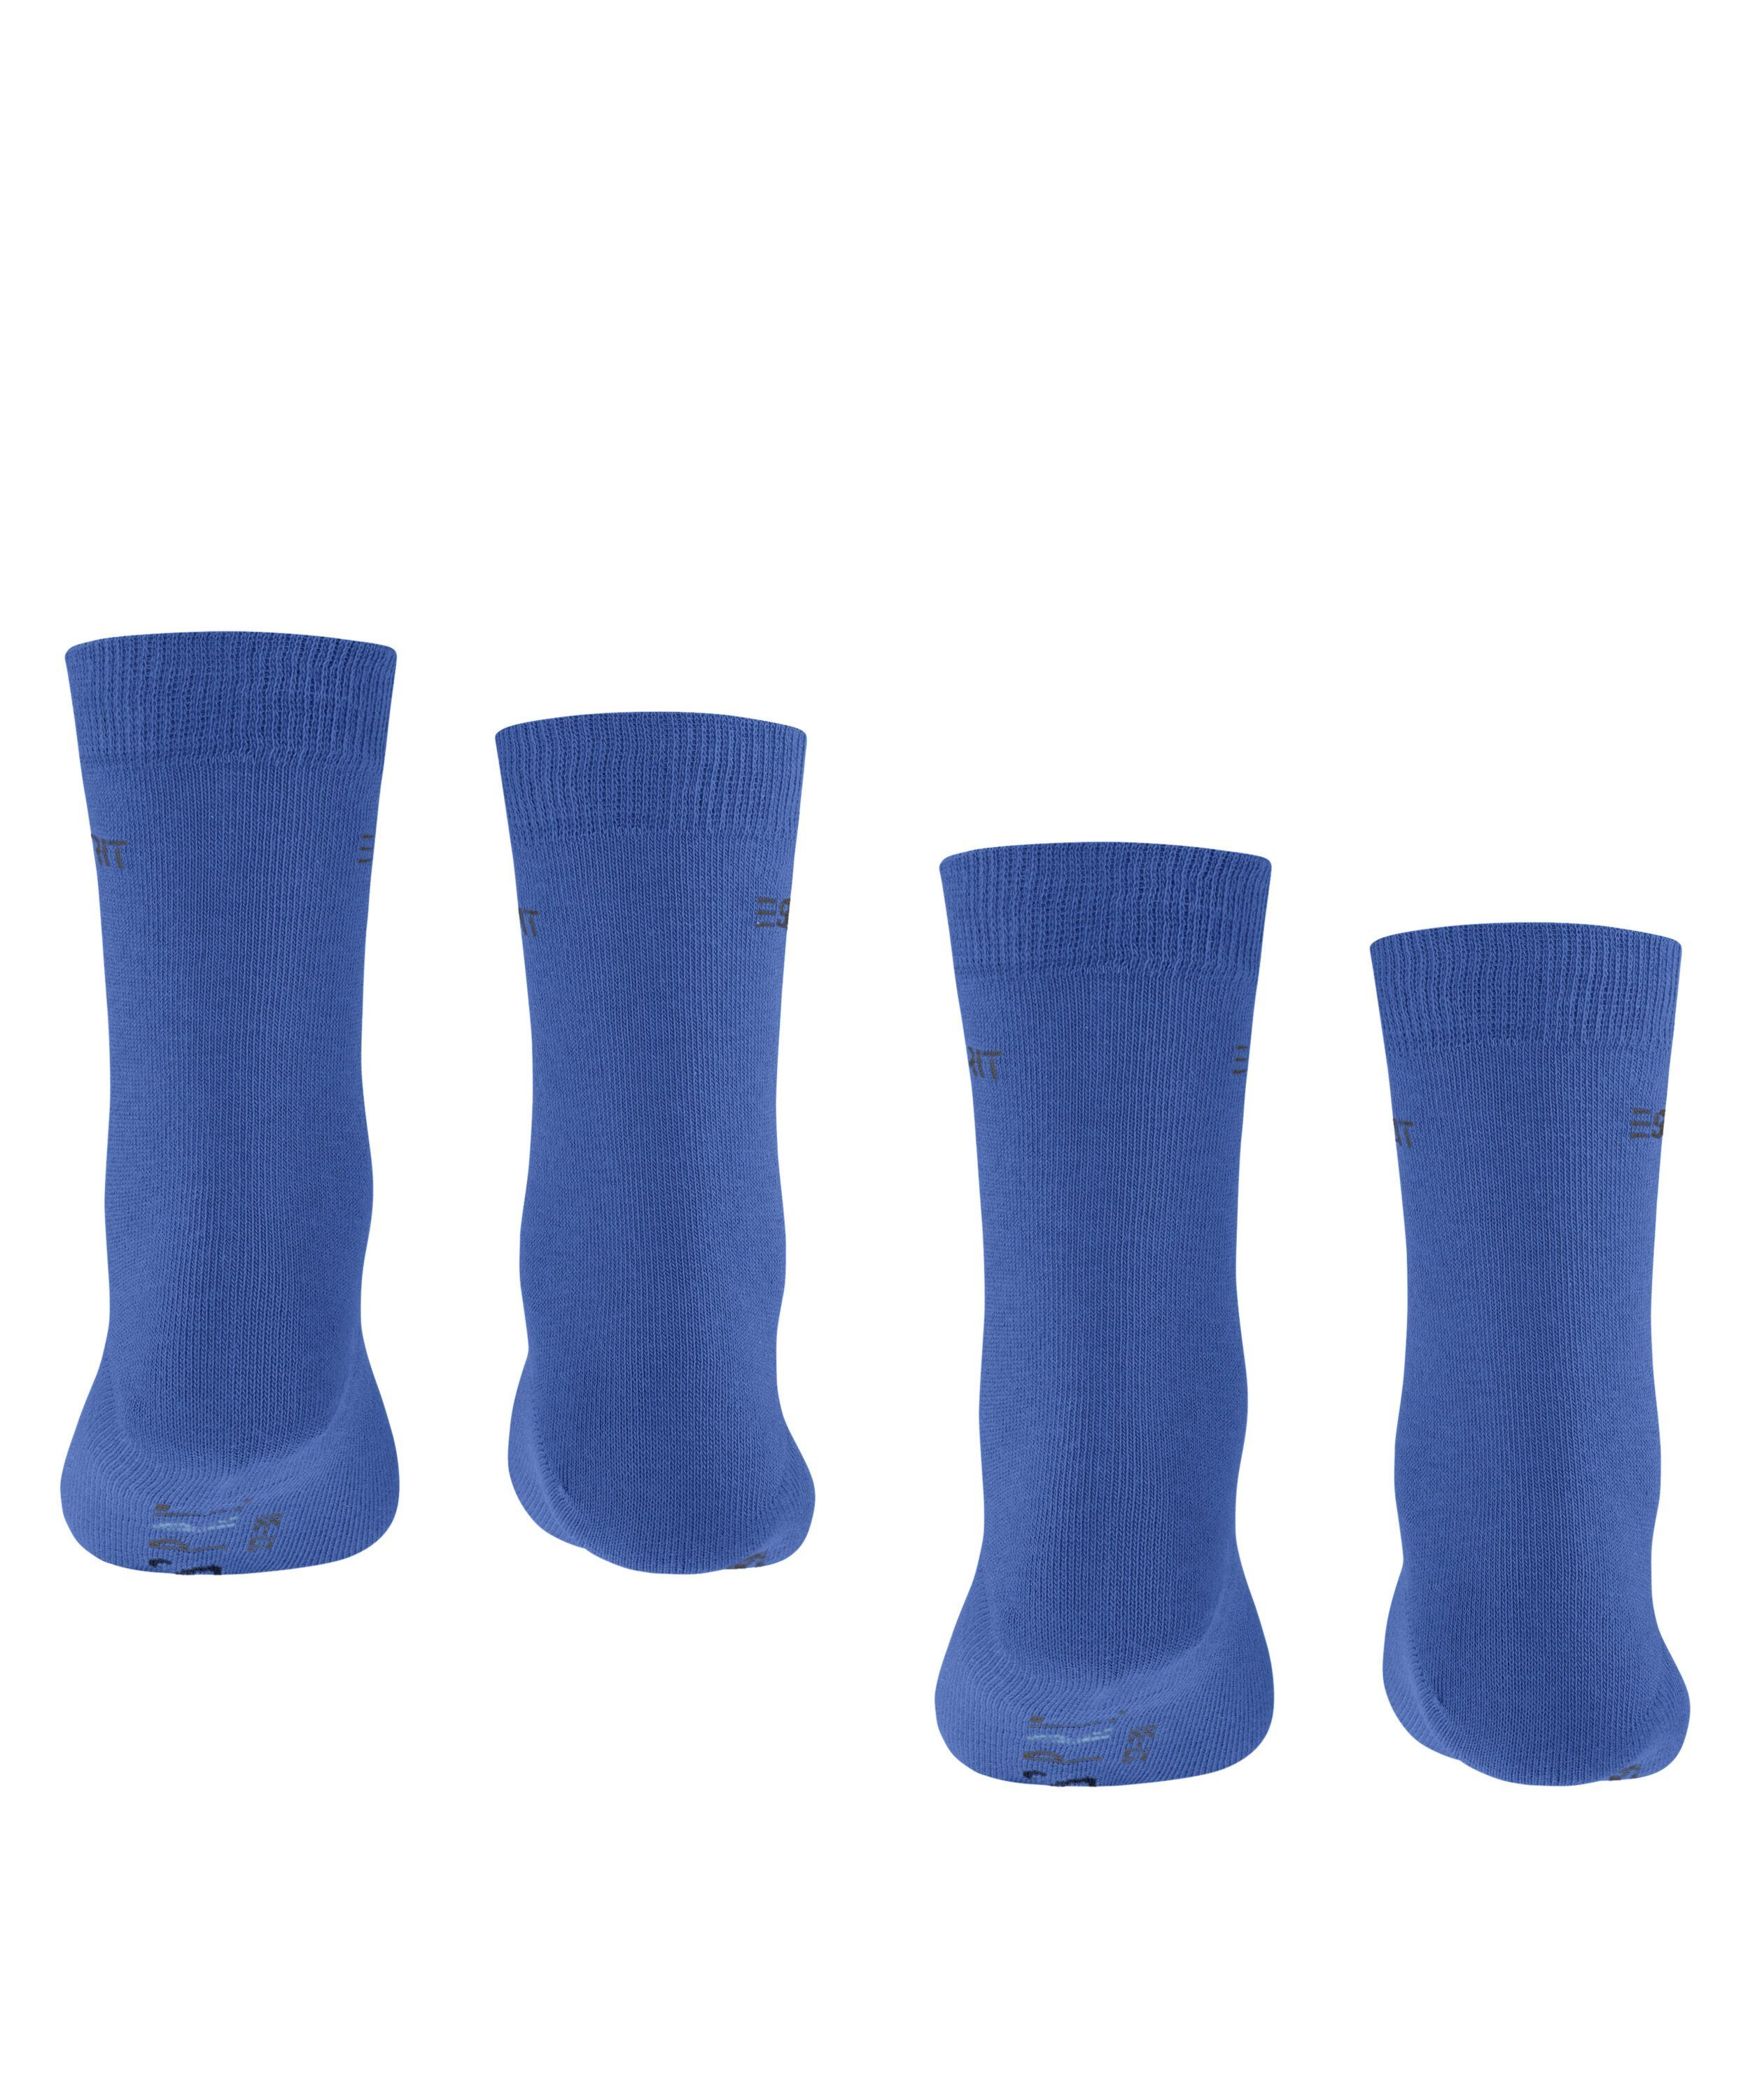 Esprit Socken deep blue 2-Pack (6046) Logo (2-Paar) Foot